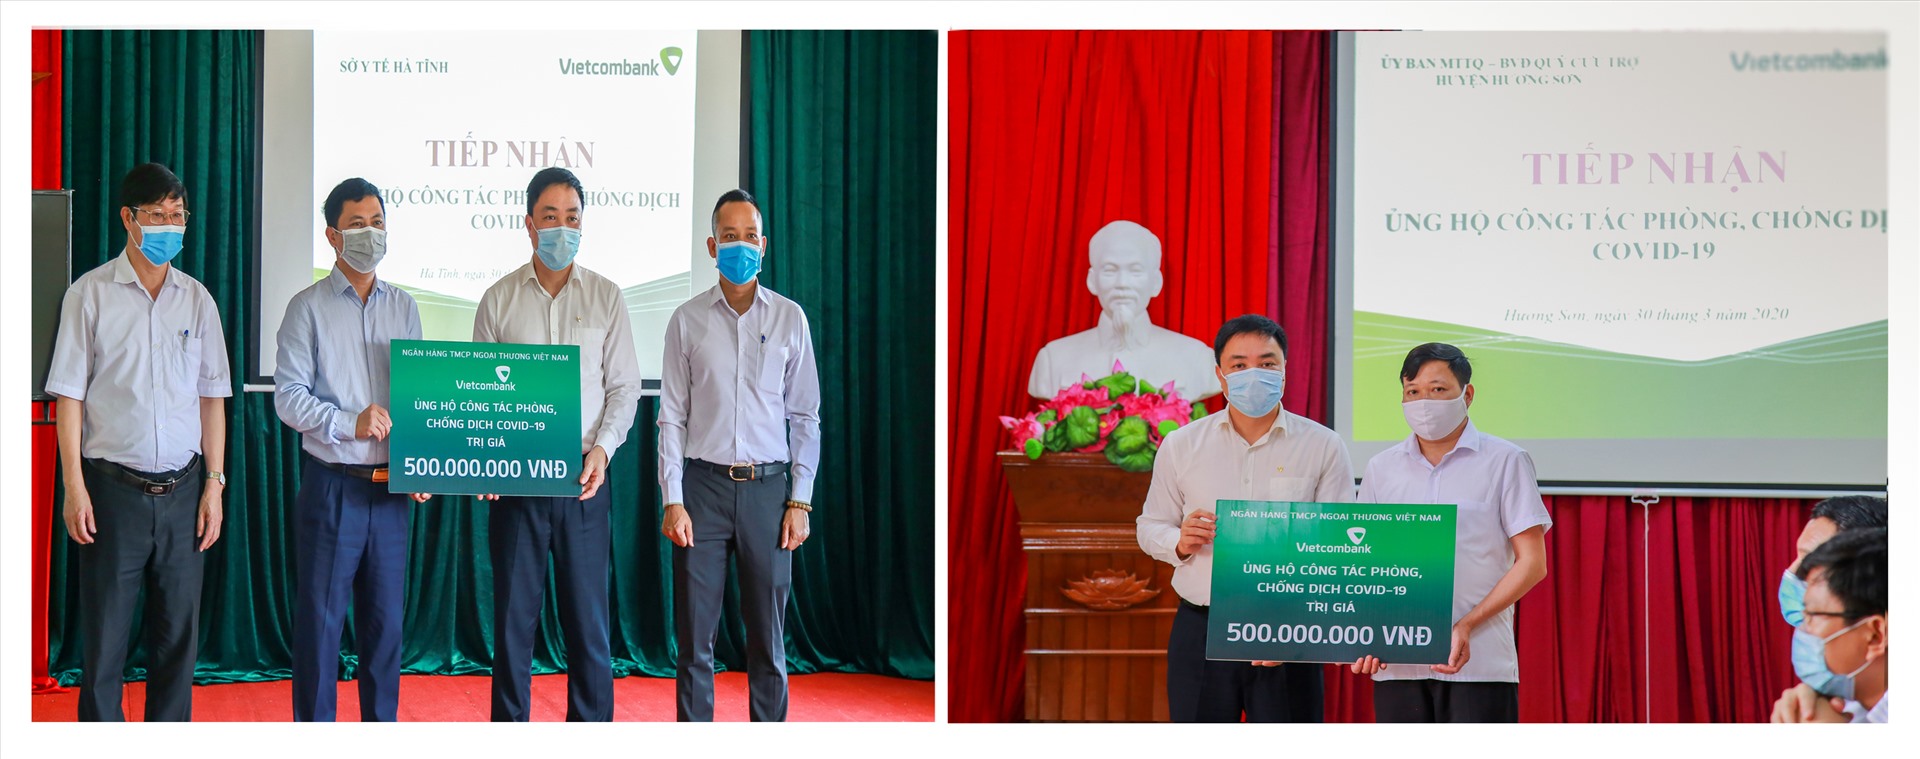 Đại diện Vietcombank trao ủng hộ Sở Y Tế tỉnh Hà Tĩnh và huyện Hương Sơn, tỉnh Hà Tĩnh mỗi đơn vị 500 triệu đồng để mua sắm trang thiết bị y tế phòng chống dịch Covid – 19. Ảnh: N.H